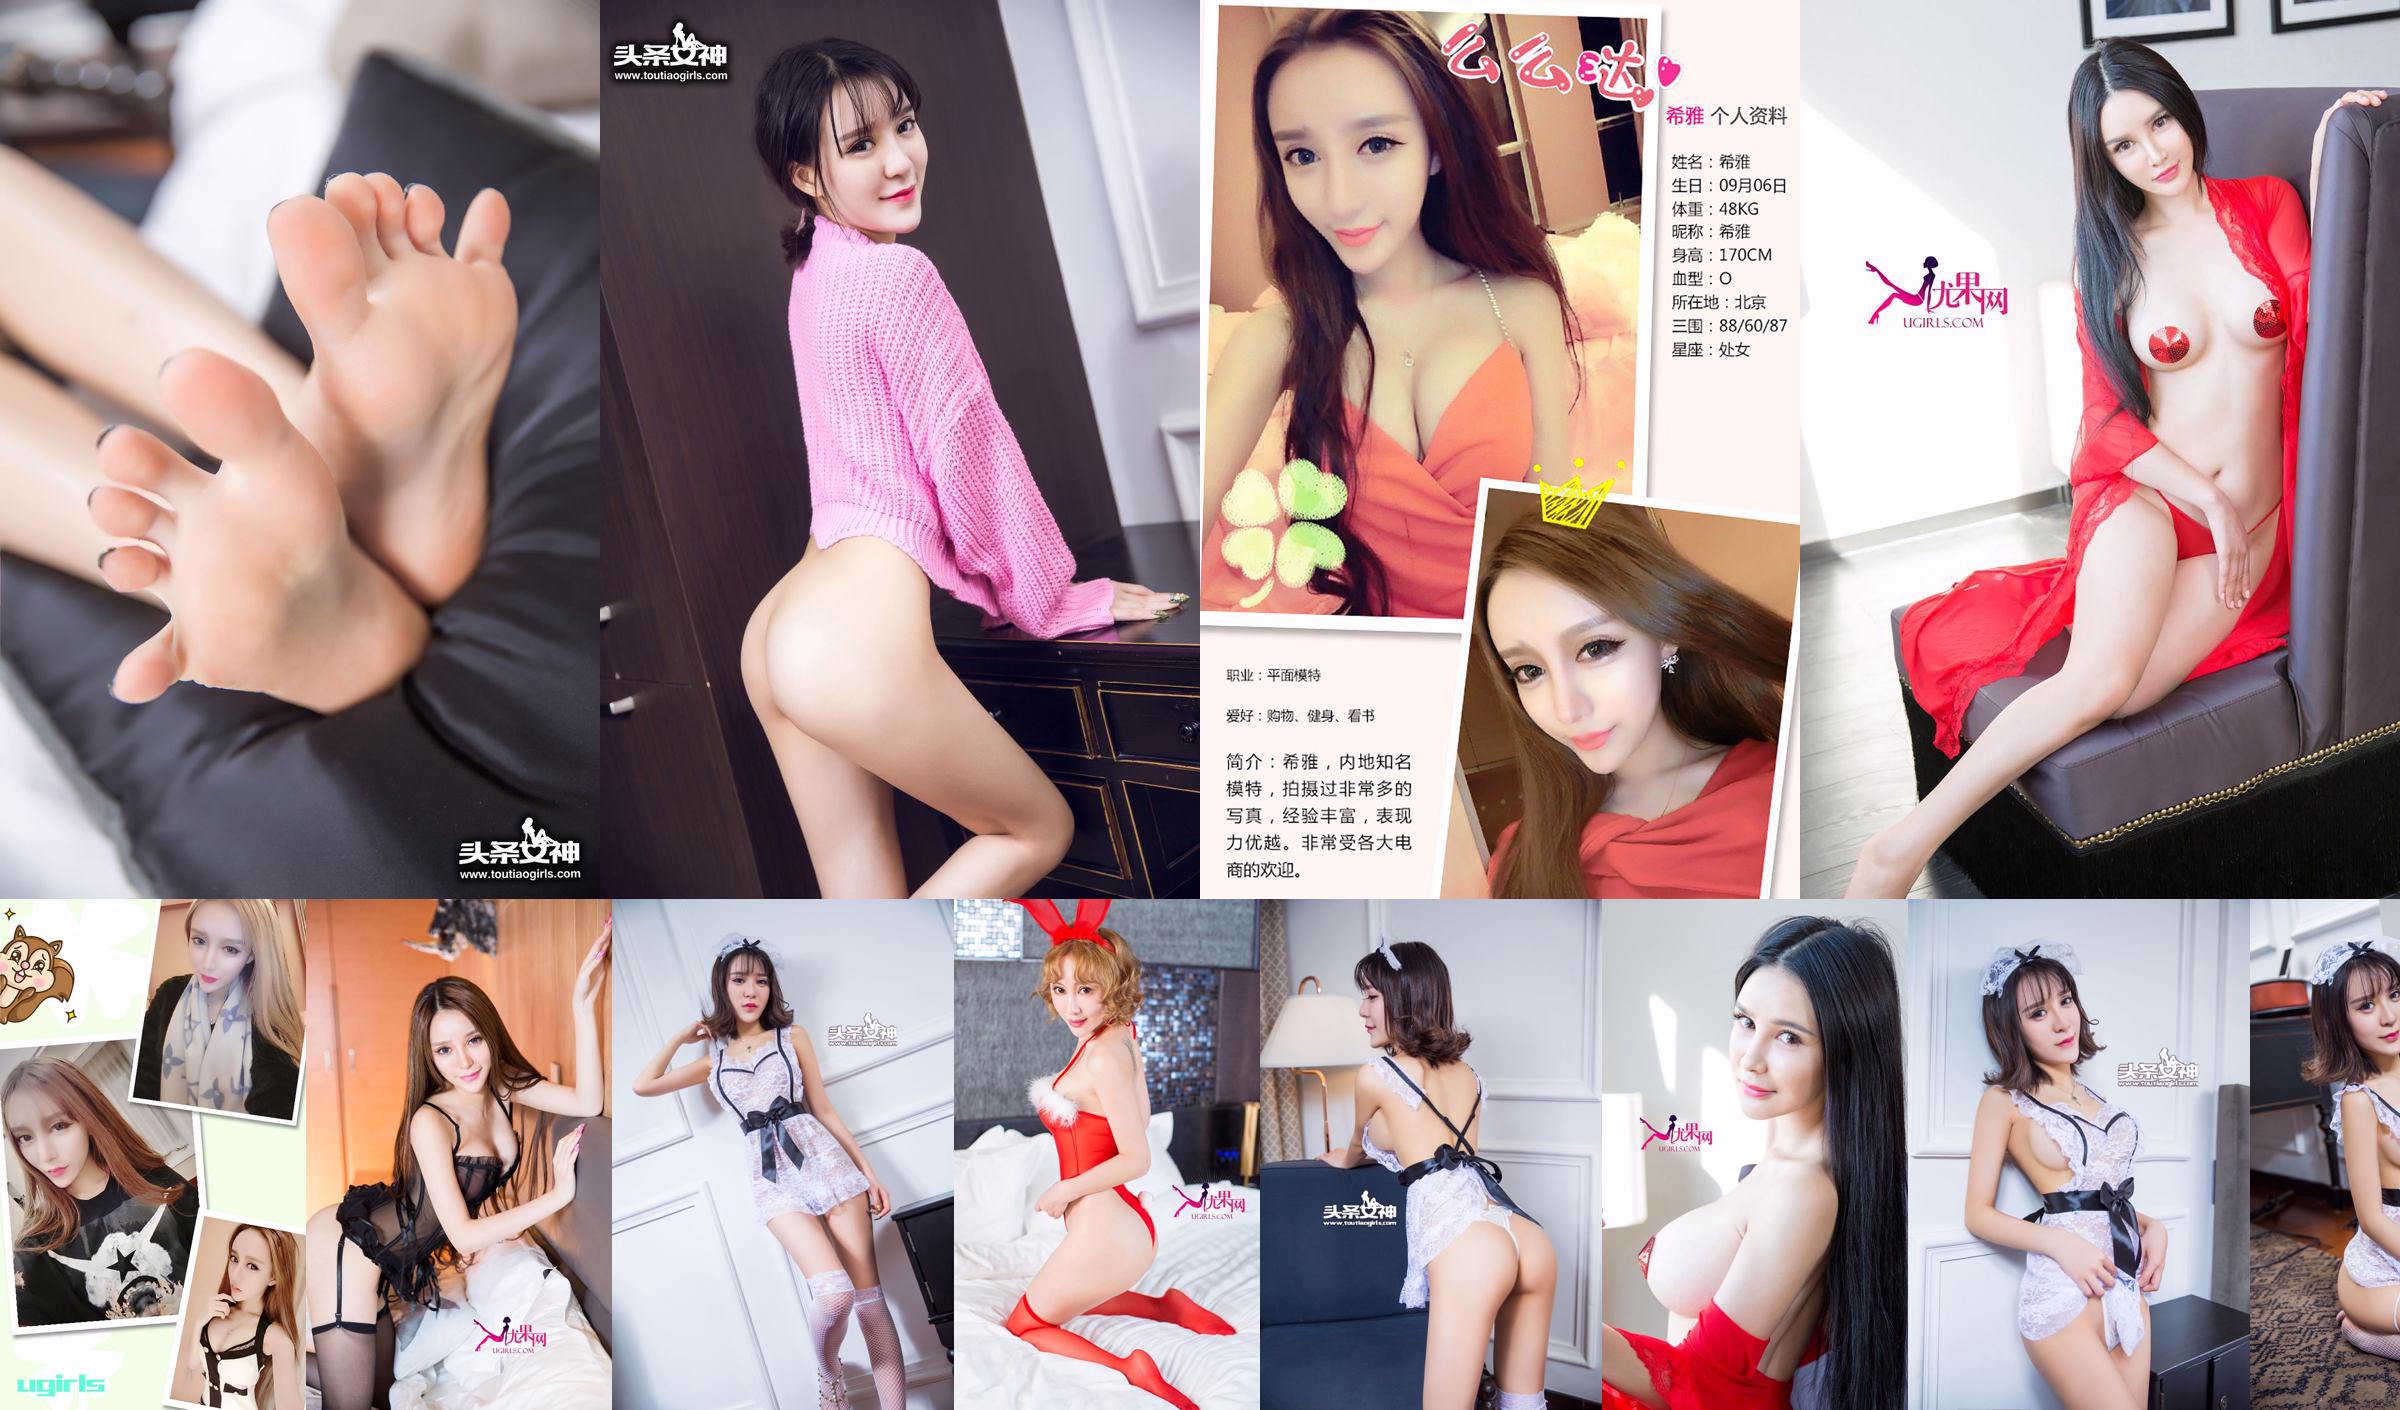 Xia "36D Lace Maid" [Bogini nagłówka] Wyłącznie dla VIP-ów No.3e85b8 Strona 1